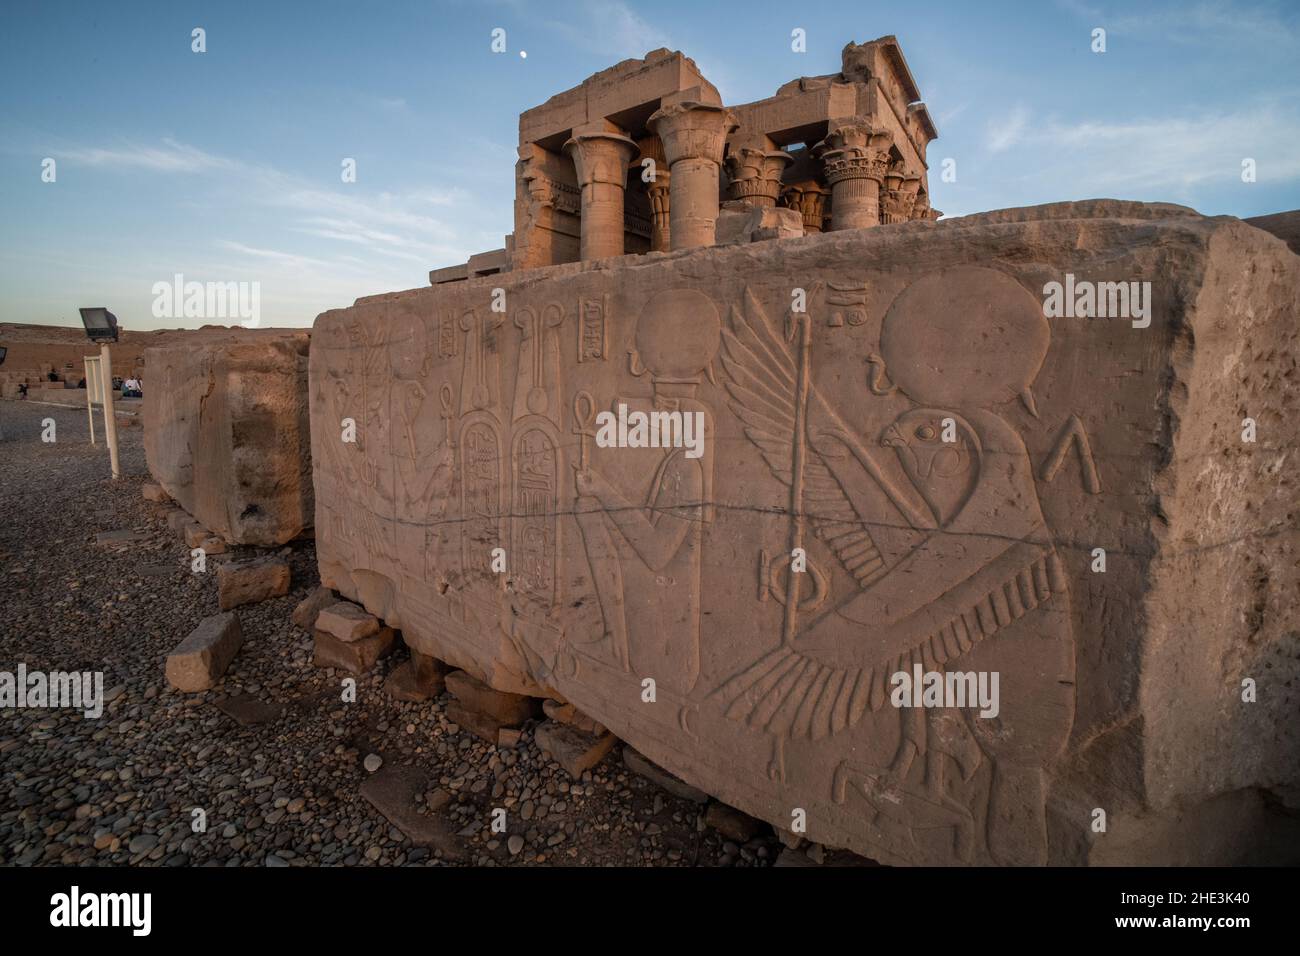 Ein Abschnitt eines Steins mit komplizierten Schnitzereien von Sobek und Horus, alten ägyptischen Göttern, aus dem Tempel von Kom Ombo in Ägypten. Stockfoto